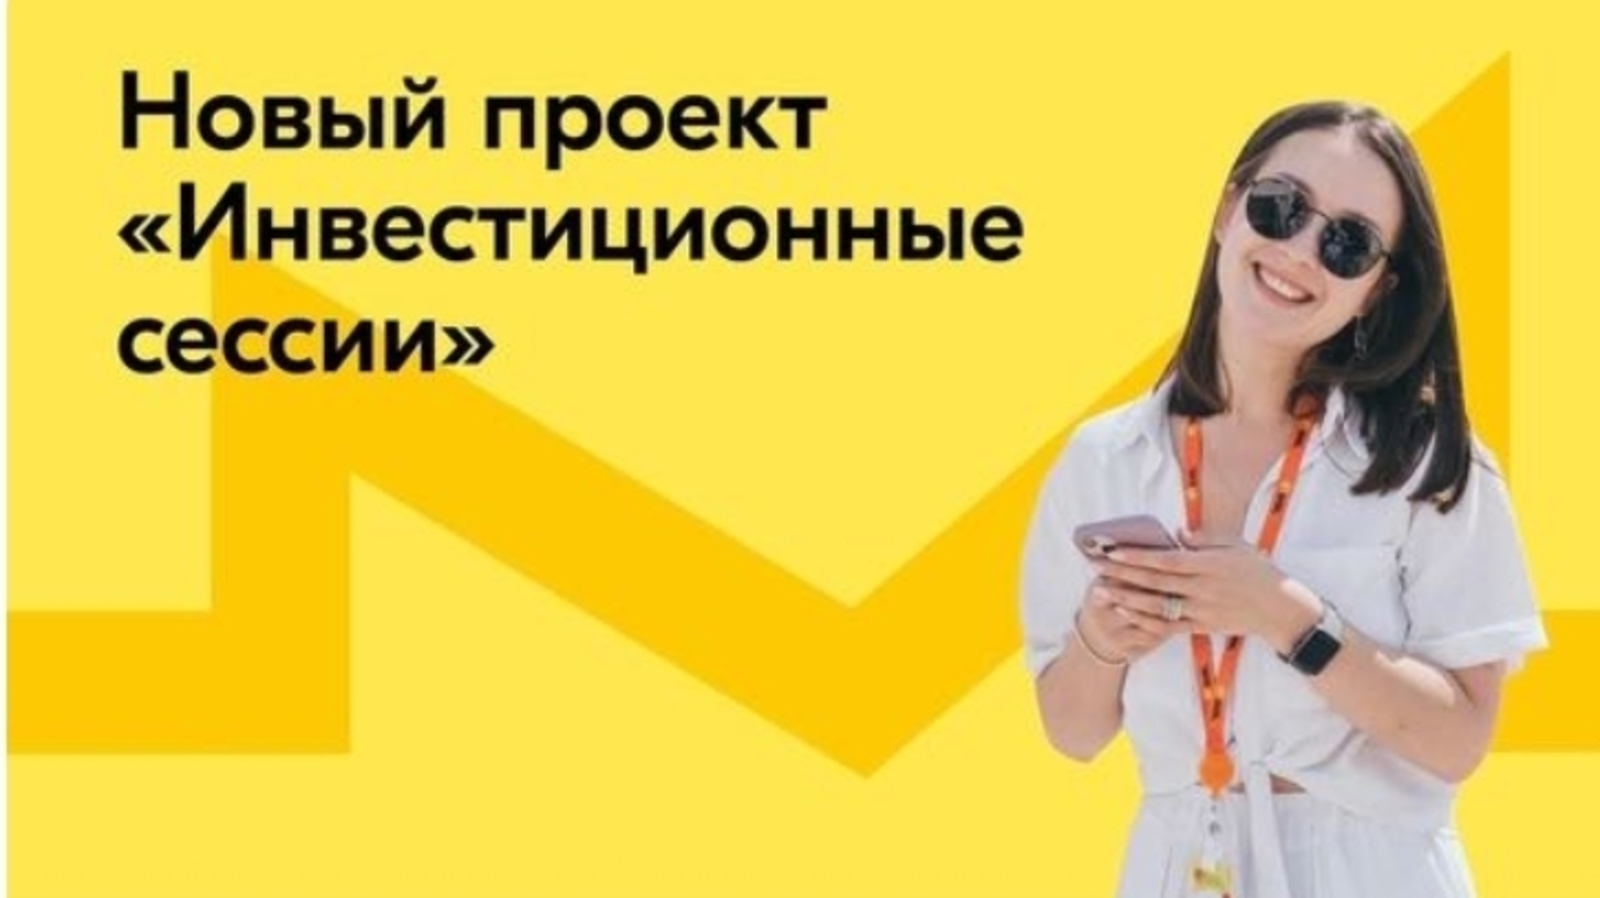 Молодые предприниматели Башкортостана смогут участвовать в инвестиционных сессиях от Росмолодёжь.Бизнес